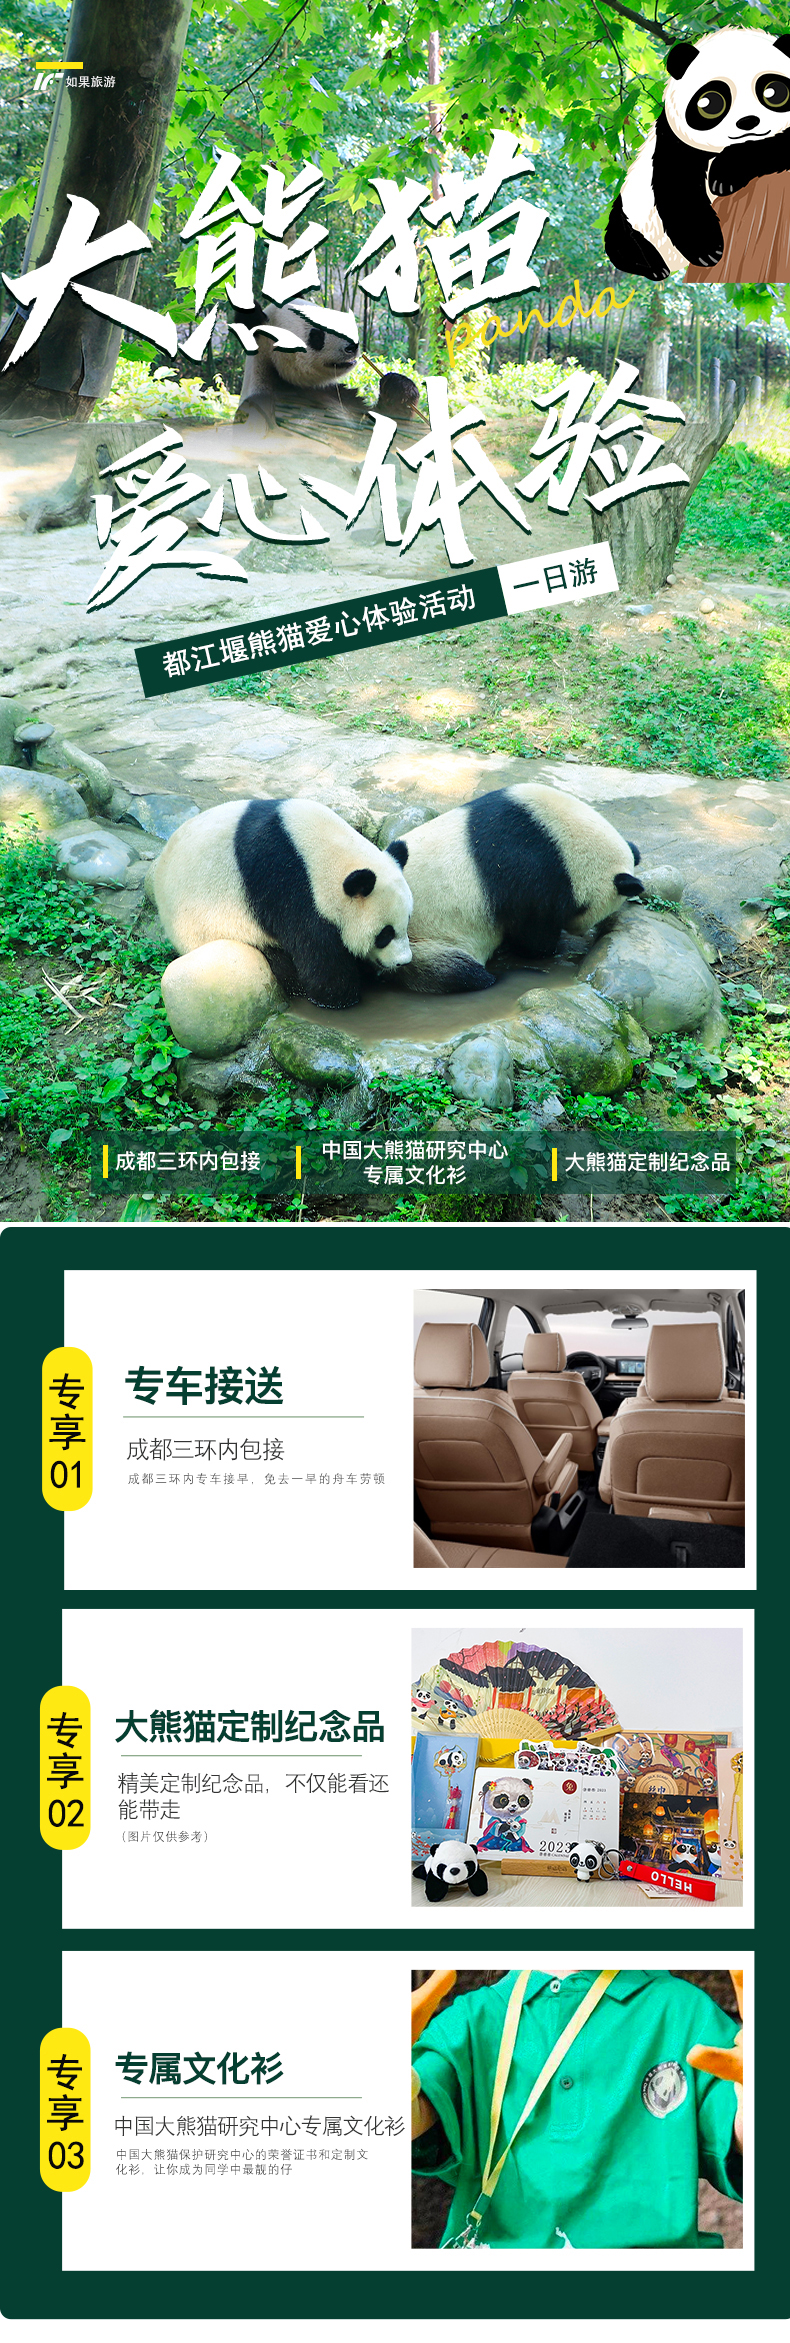 熊猫一日游_01.jpg